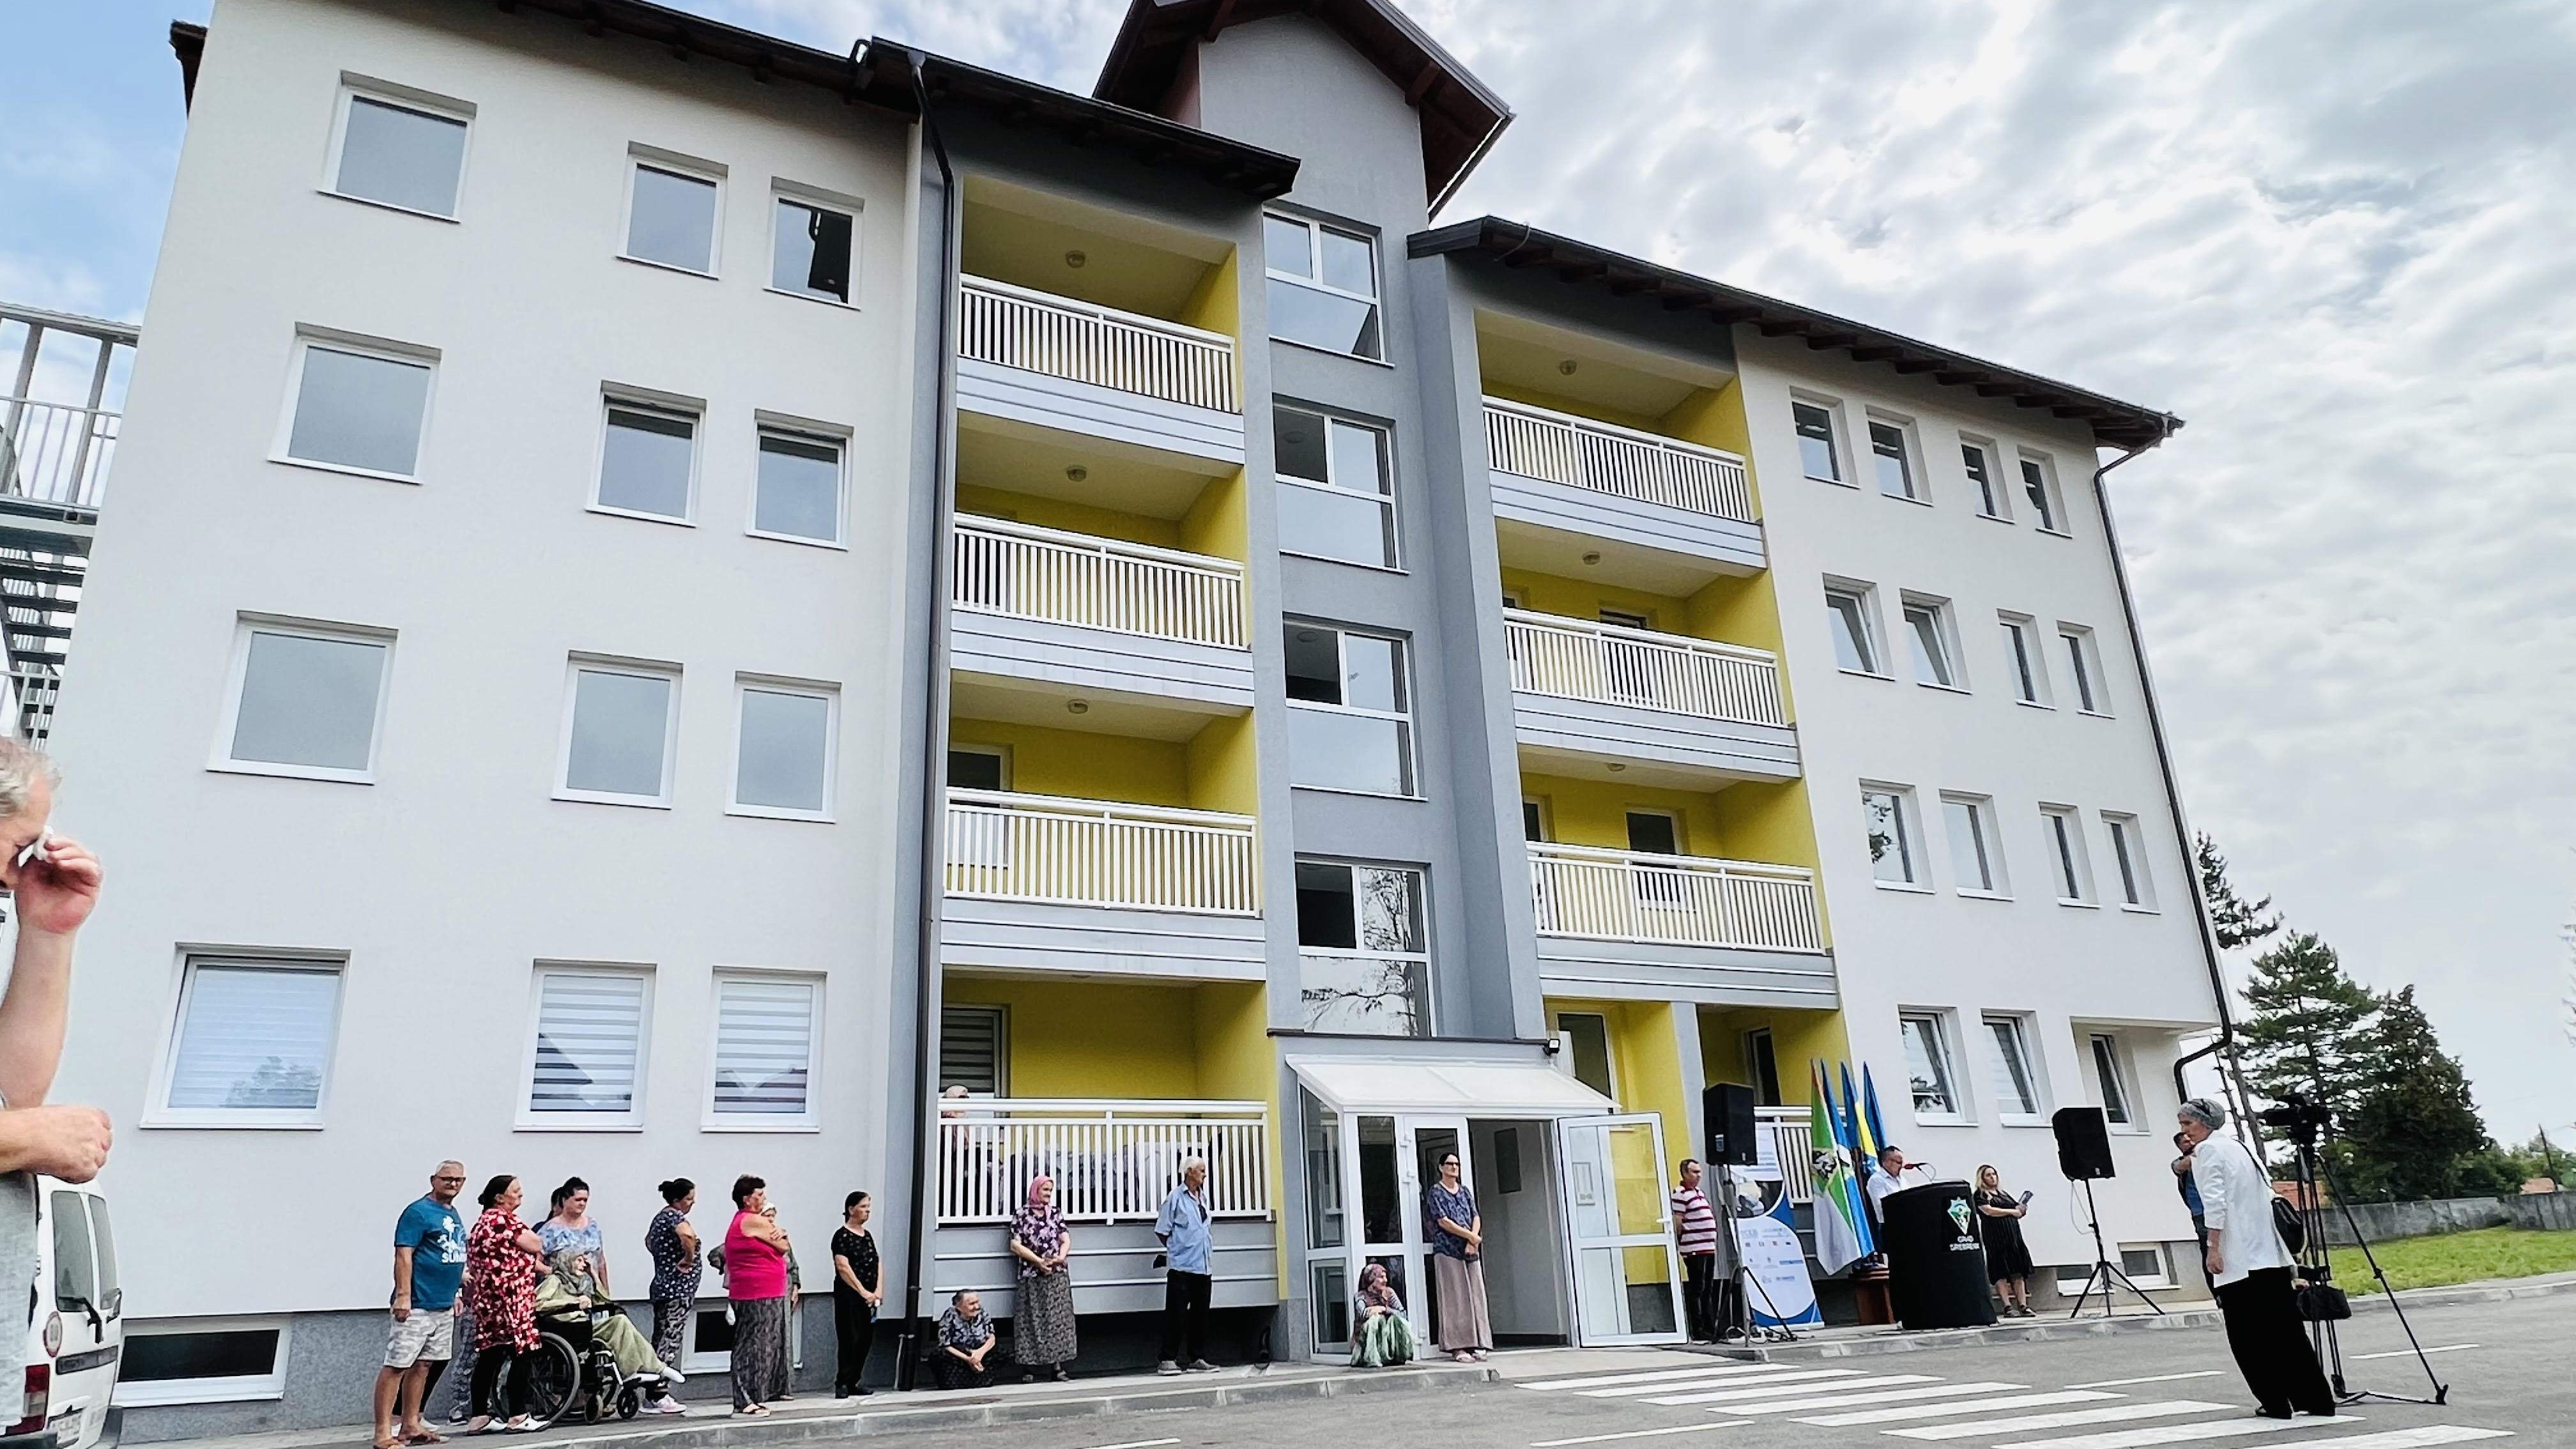 U naselju Tinja kod Srebrenika 20 porodica iz kolektivnih centara dobilo ključeve stanova